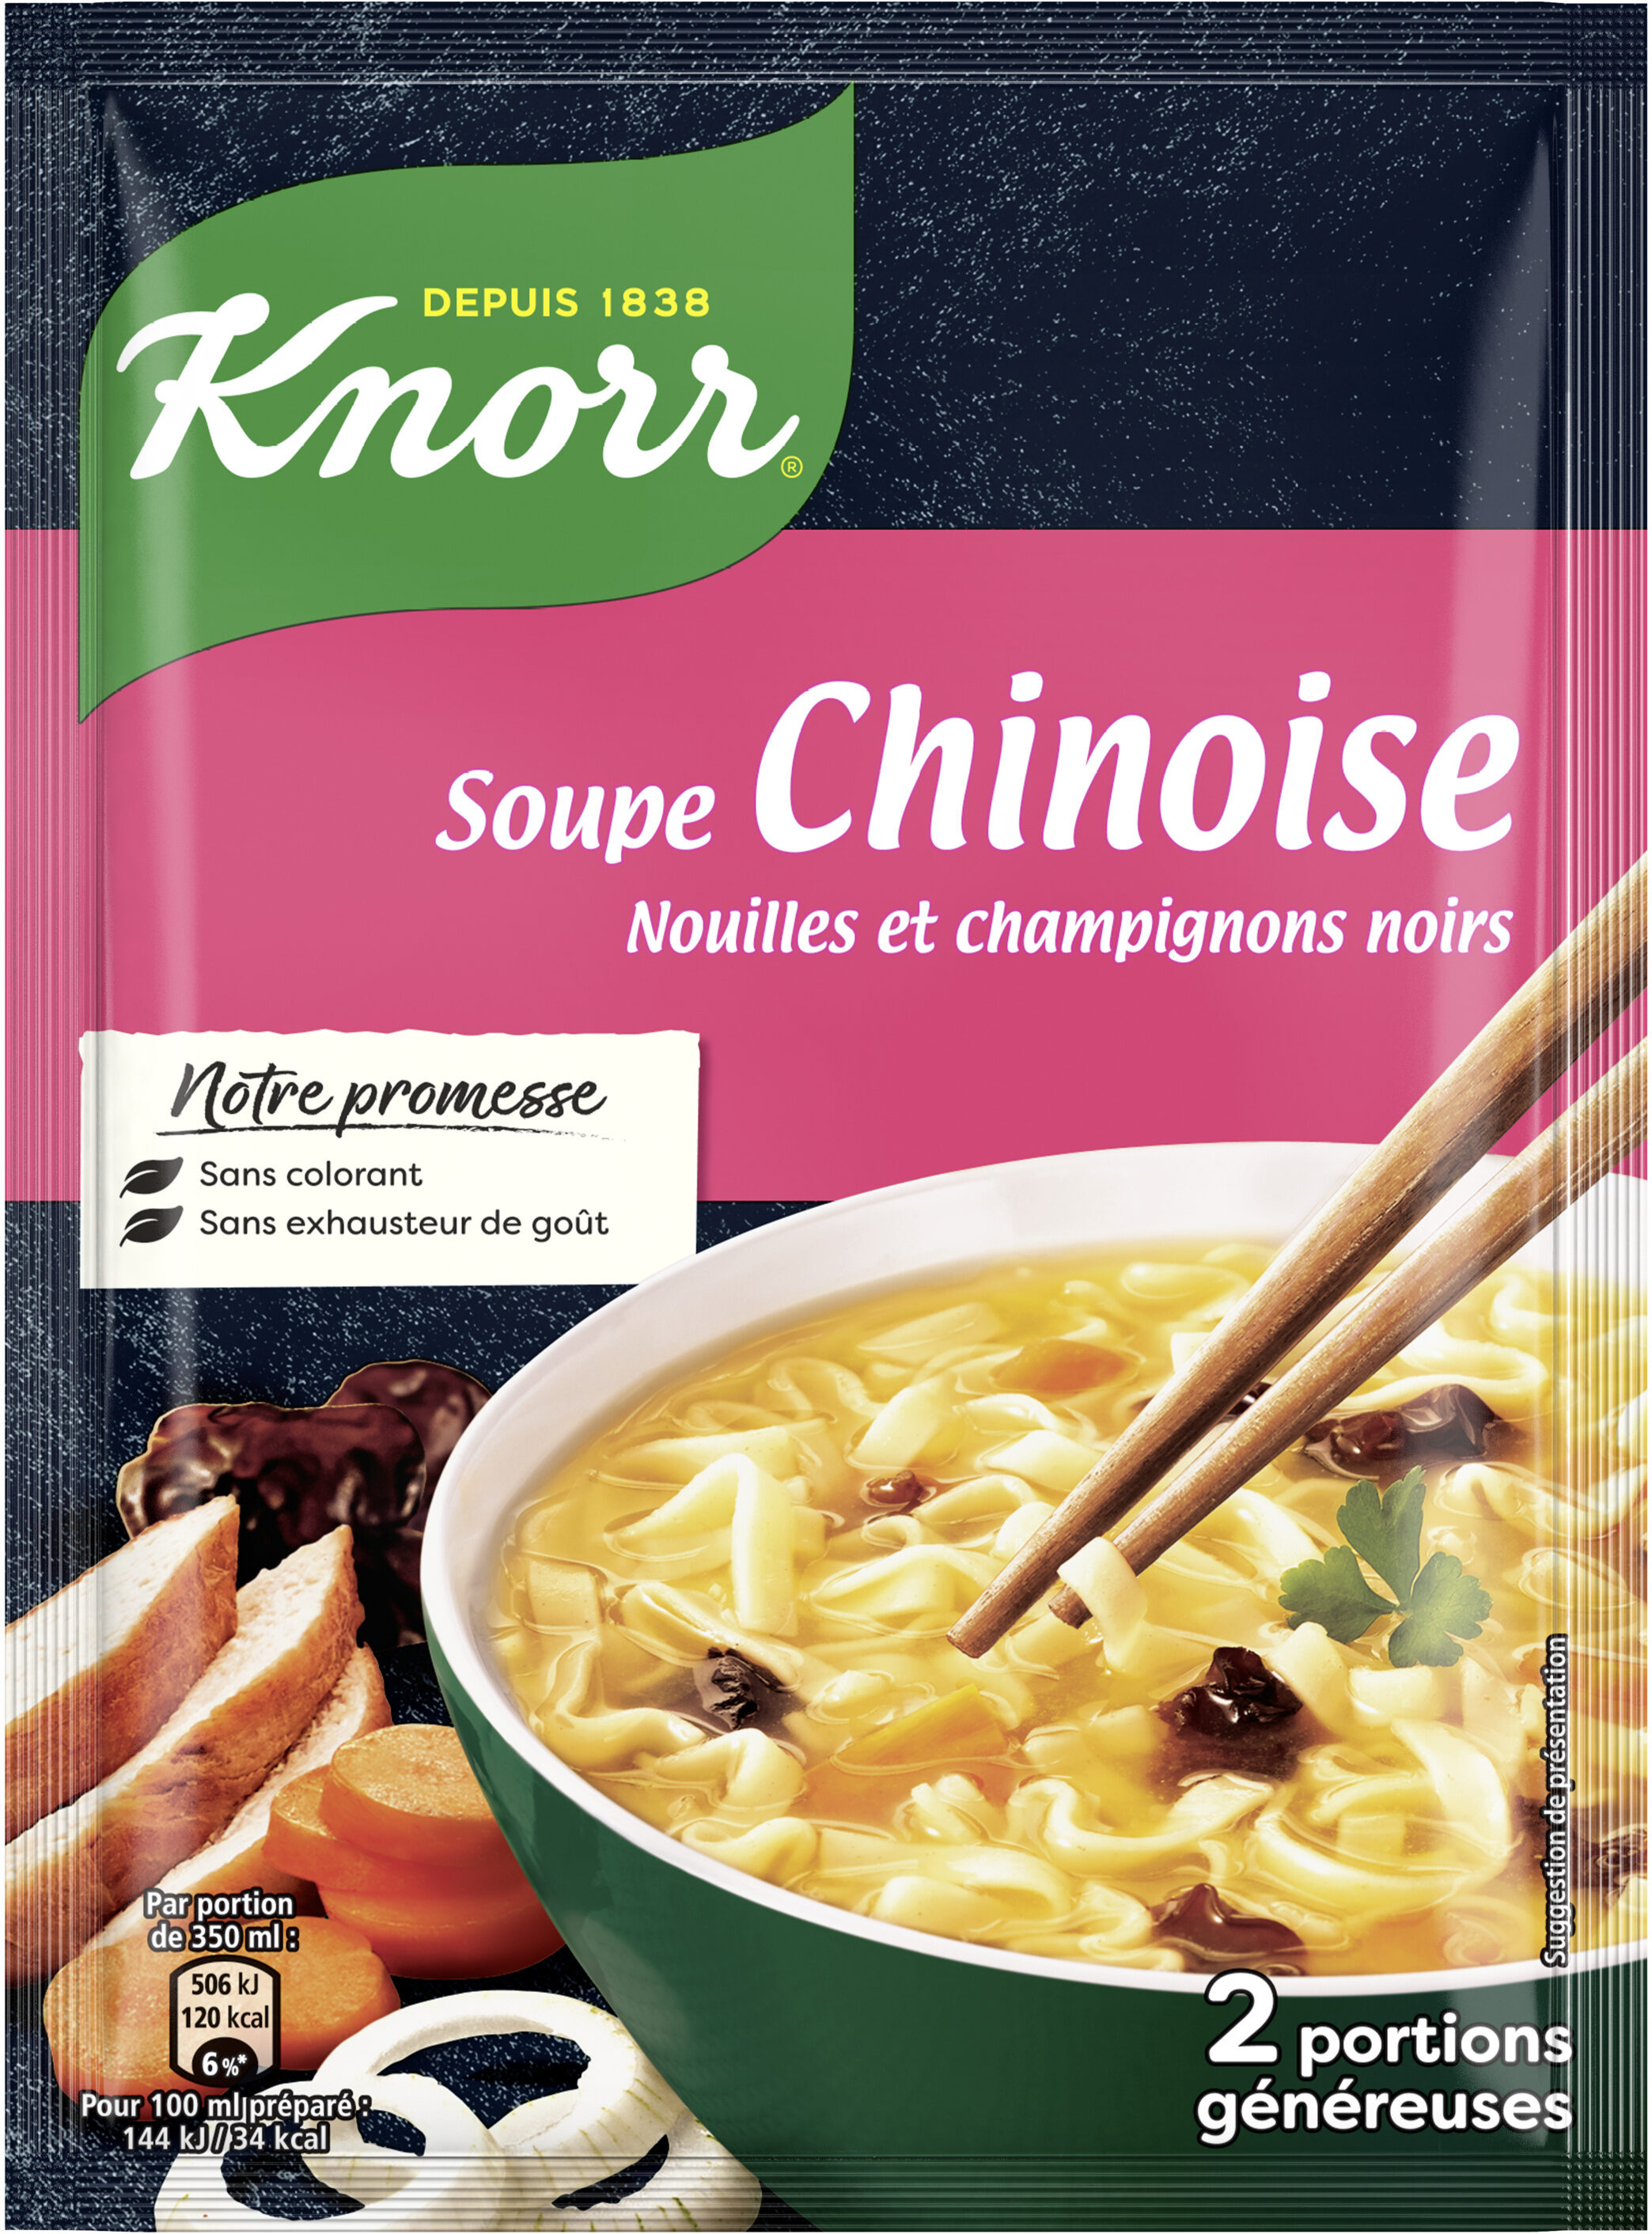 Knorr Soupe Déshydratée Chinoise Nouilles et Champignons Noirs Sachet 69g 2 Portions - Product - fr